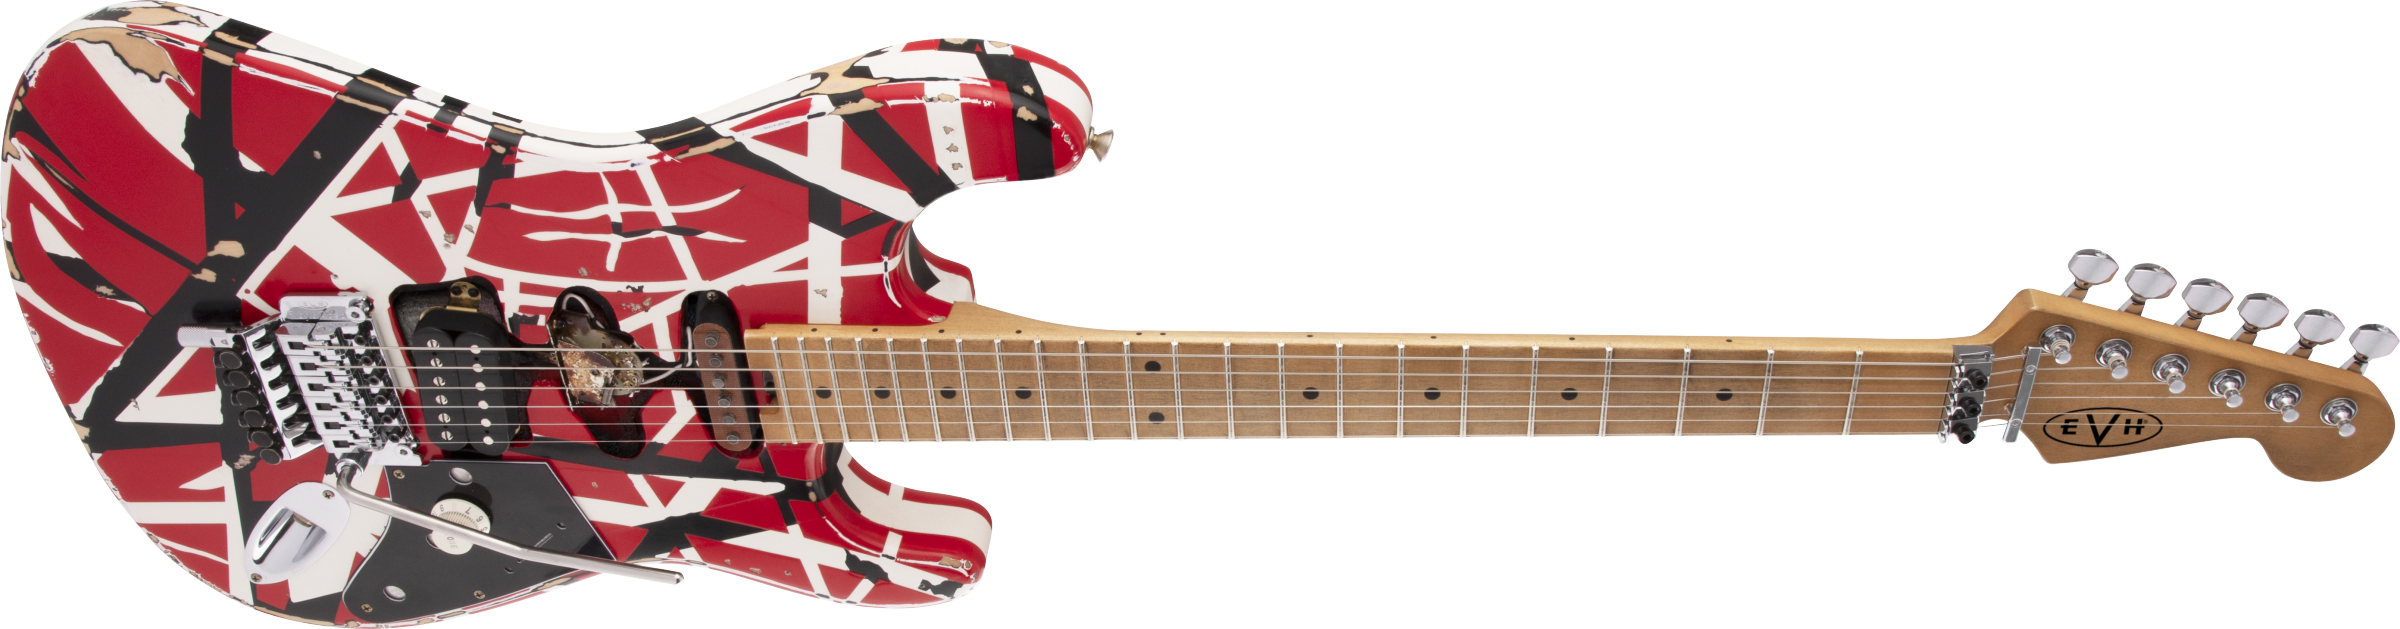 Evh Eddie Van Halen Frankenstein Frankie Striped Series Mex H Fr Mn - Red With Black & White Stripes - E-Gitarre in Str-Form - Variation 3